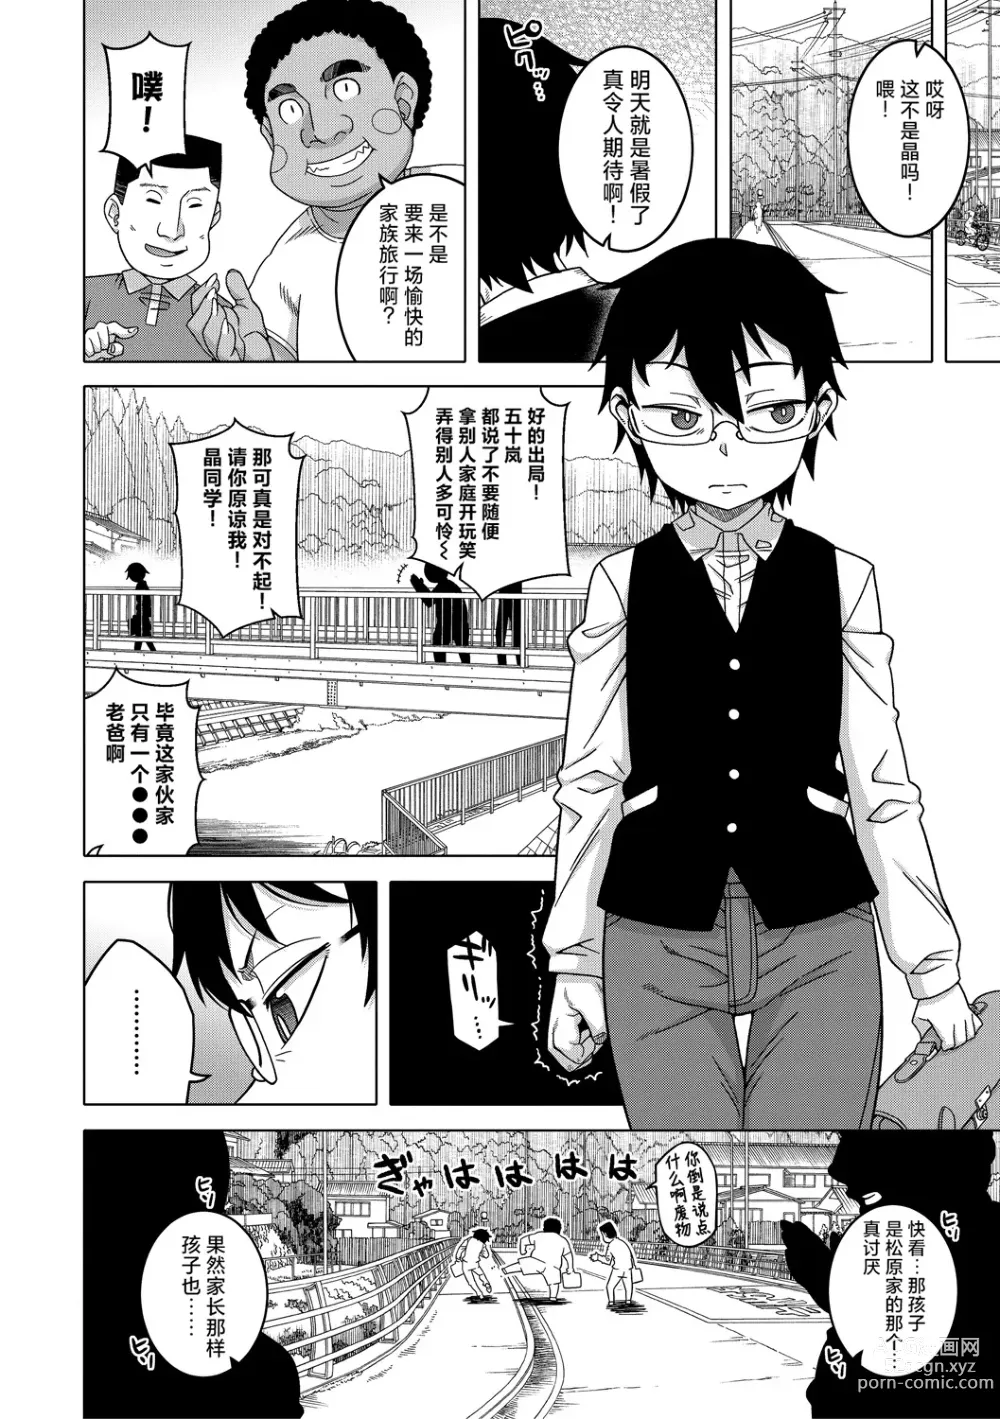 Page 5 of manga Kami-sama no Tsukurikata